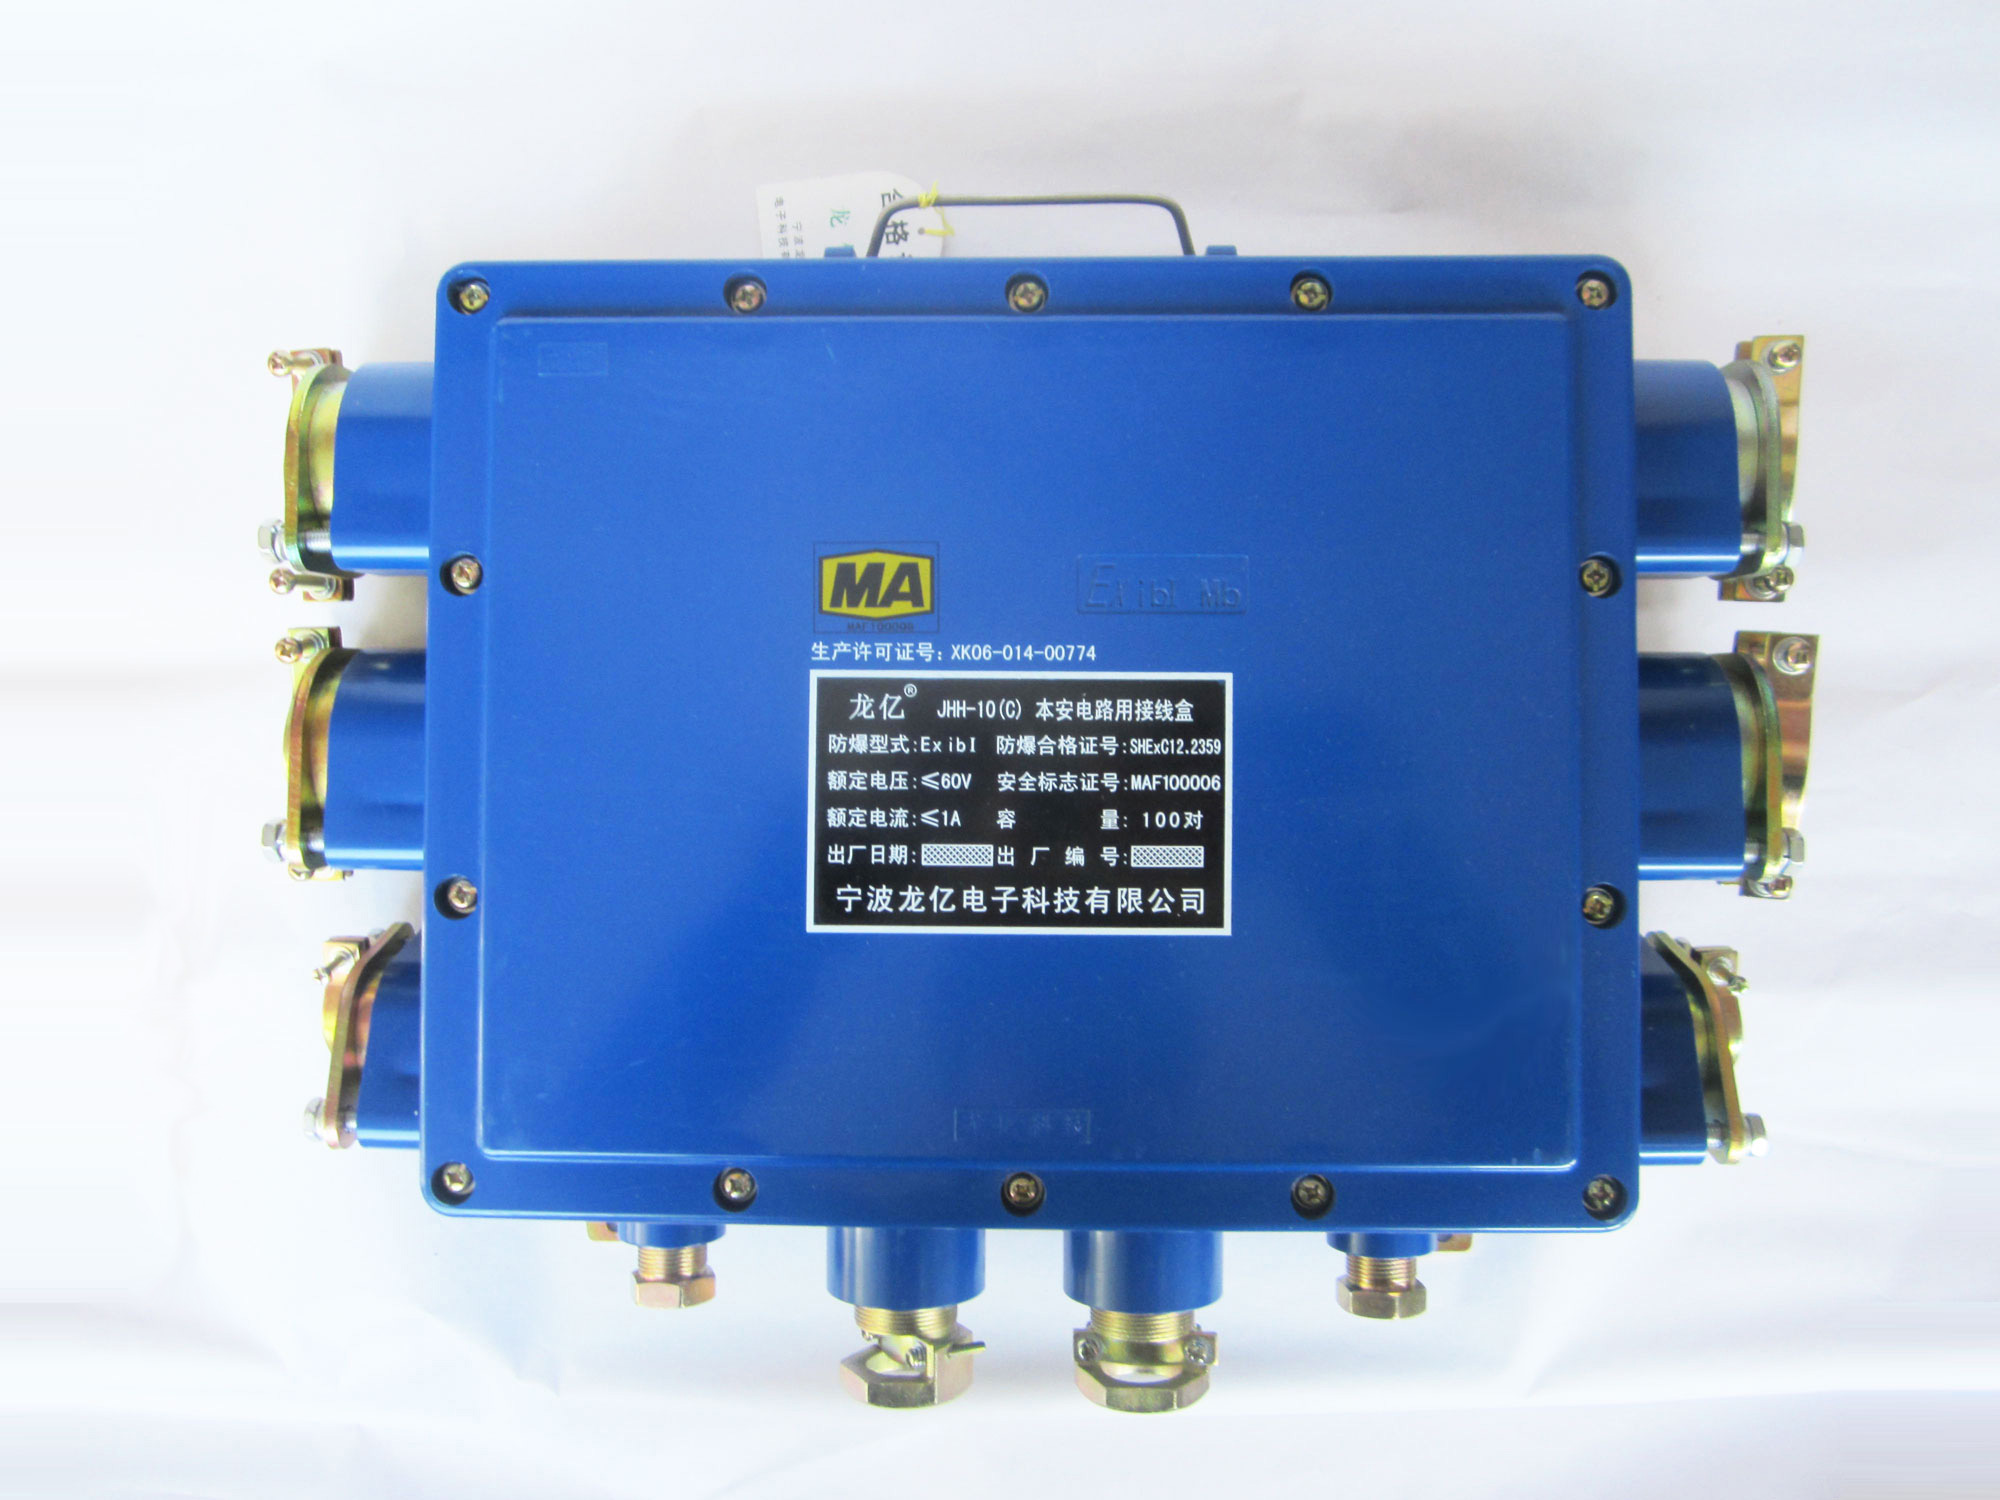 JHH-10(C)本安電路用接線盒公司